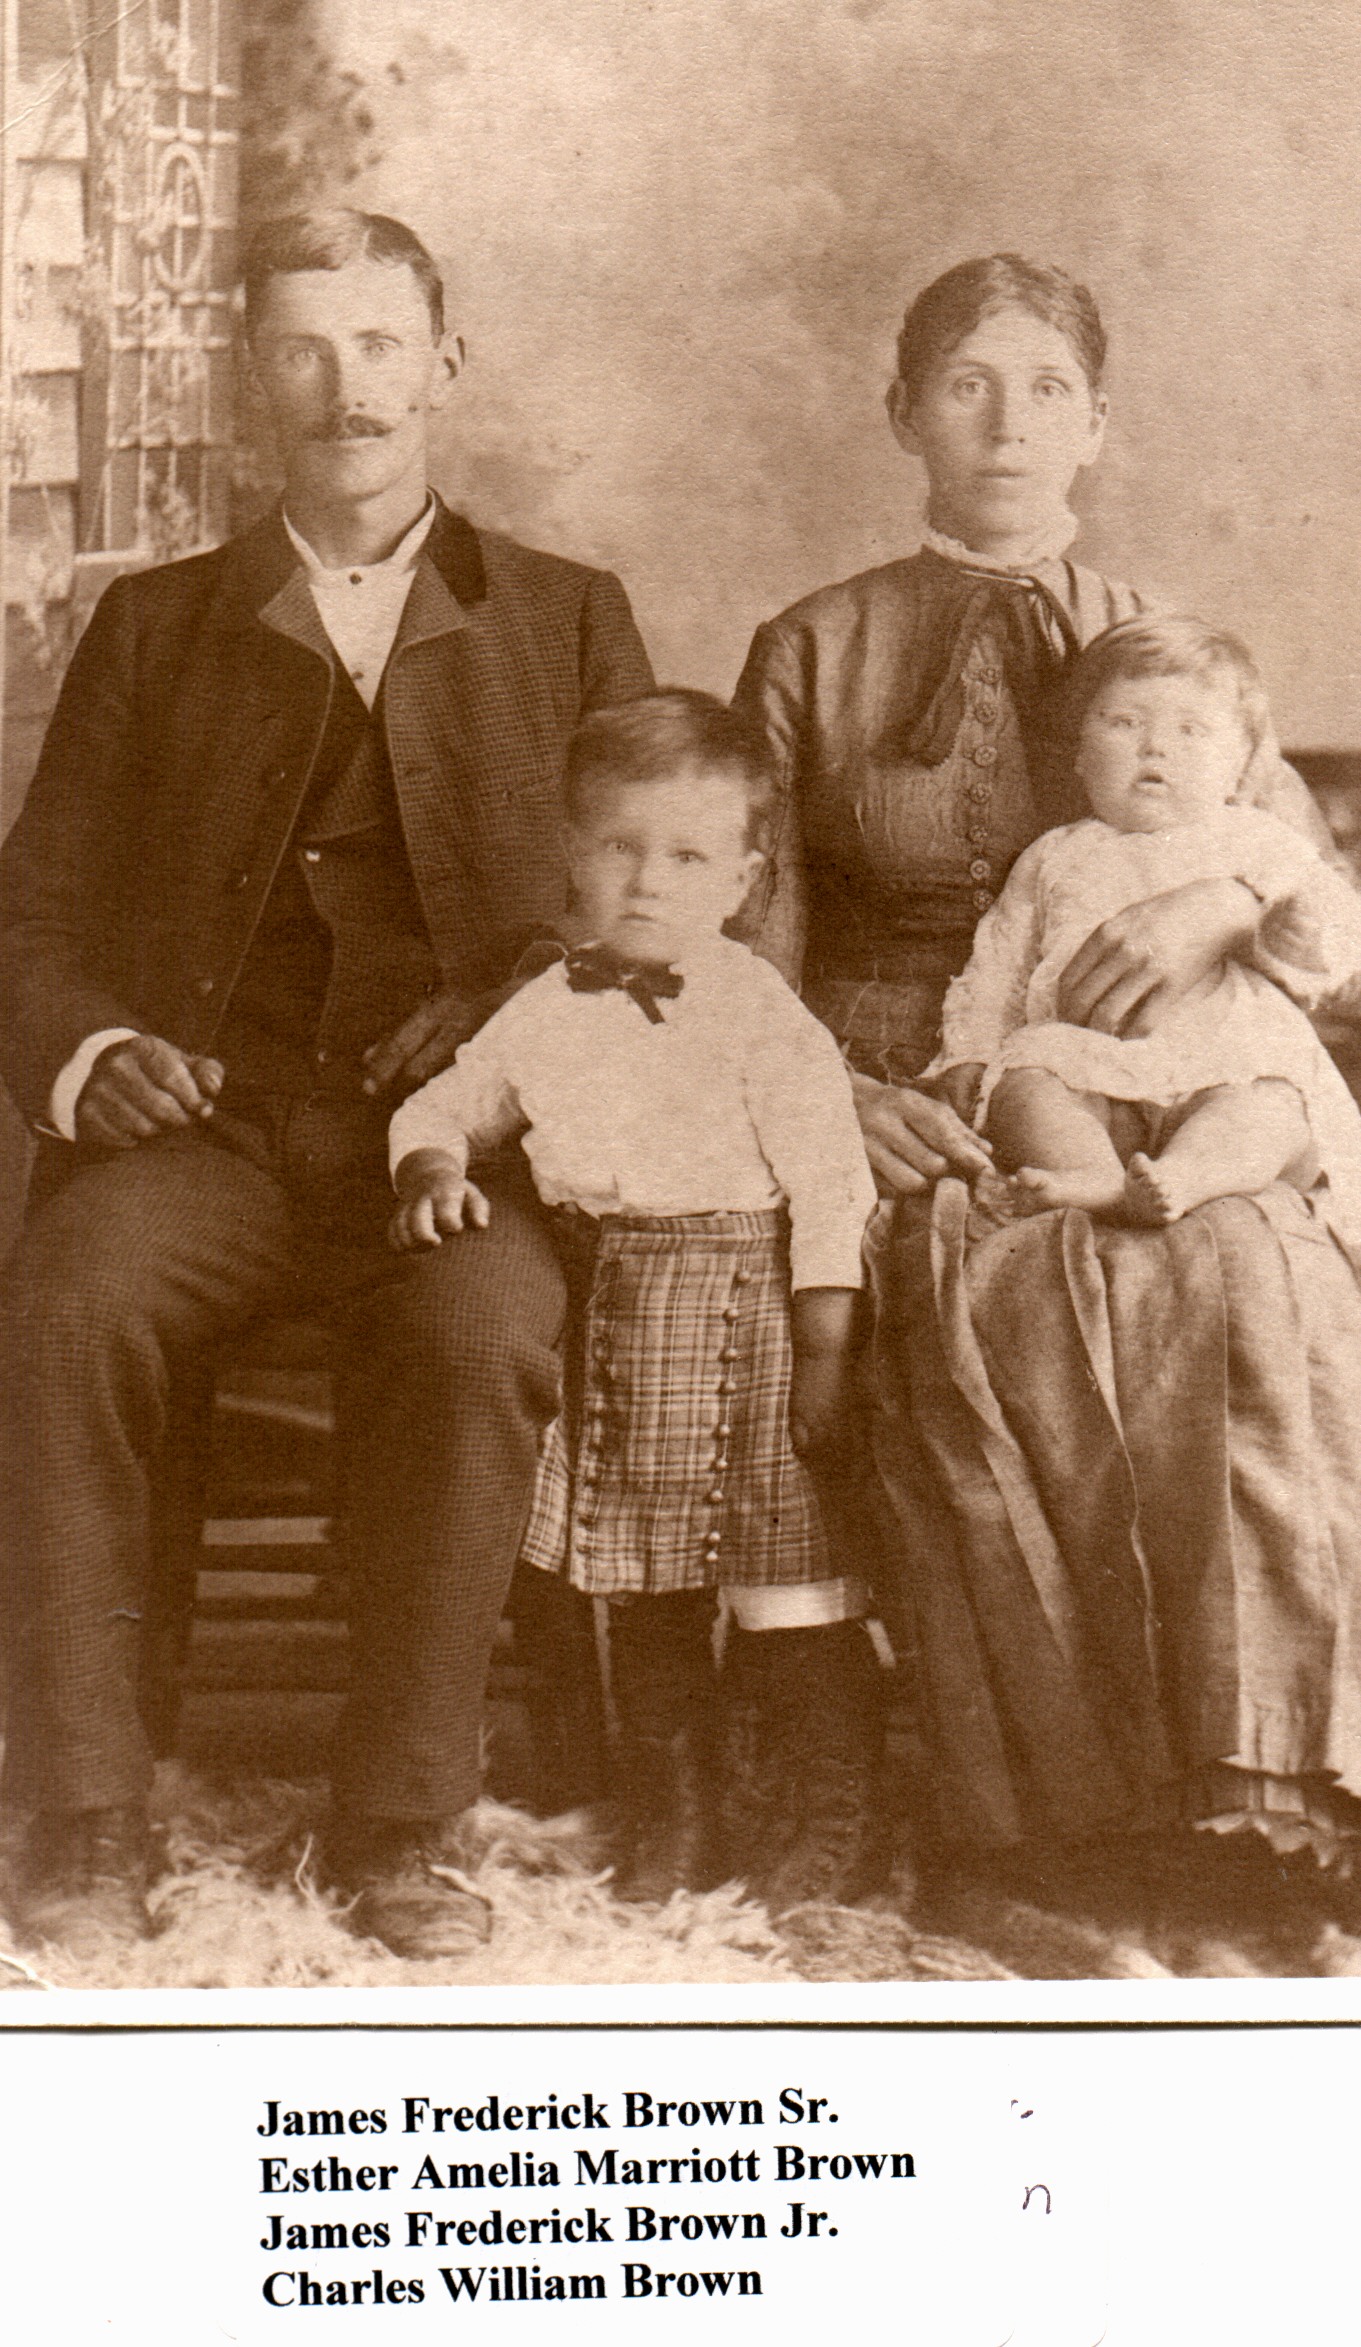 James Fredrick Brown Sr, Ester Amelia Marriott Brown with James Fredrick Brown Jr and Charles William Brown c.1887